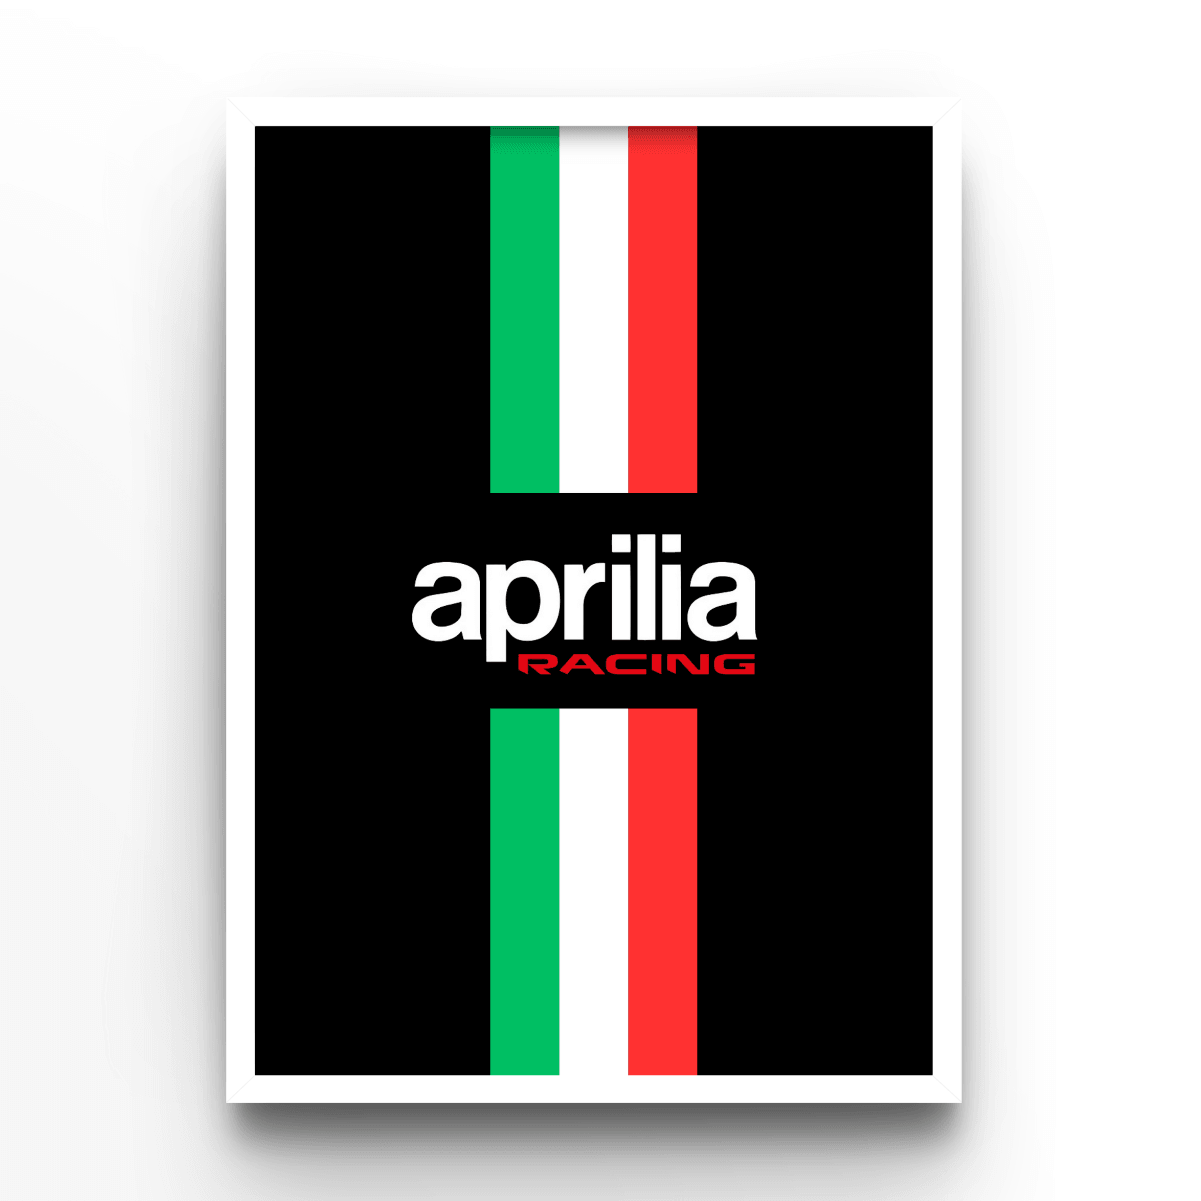 Aprilia - A4, A3, A2 Posters Base - Poster Print Shop / Art Prints / PostersBase